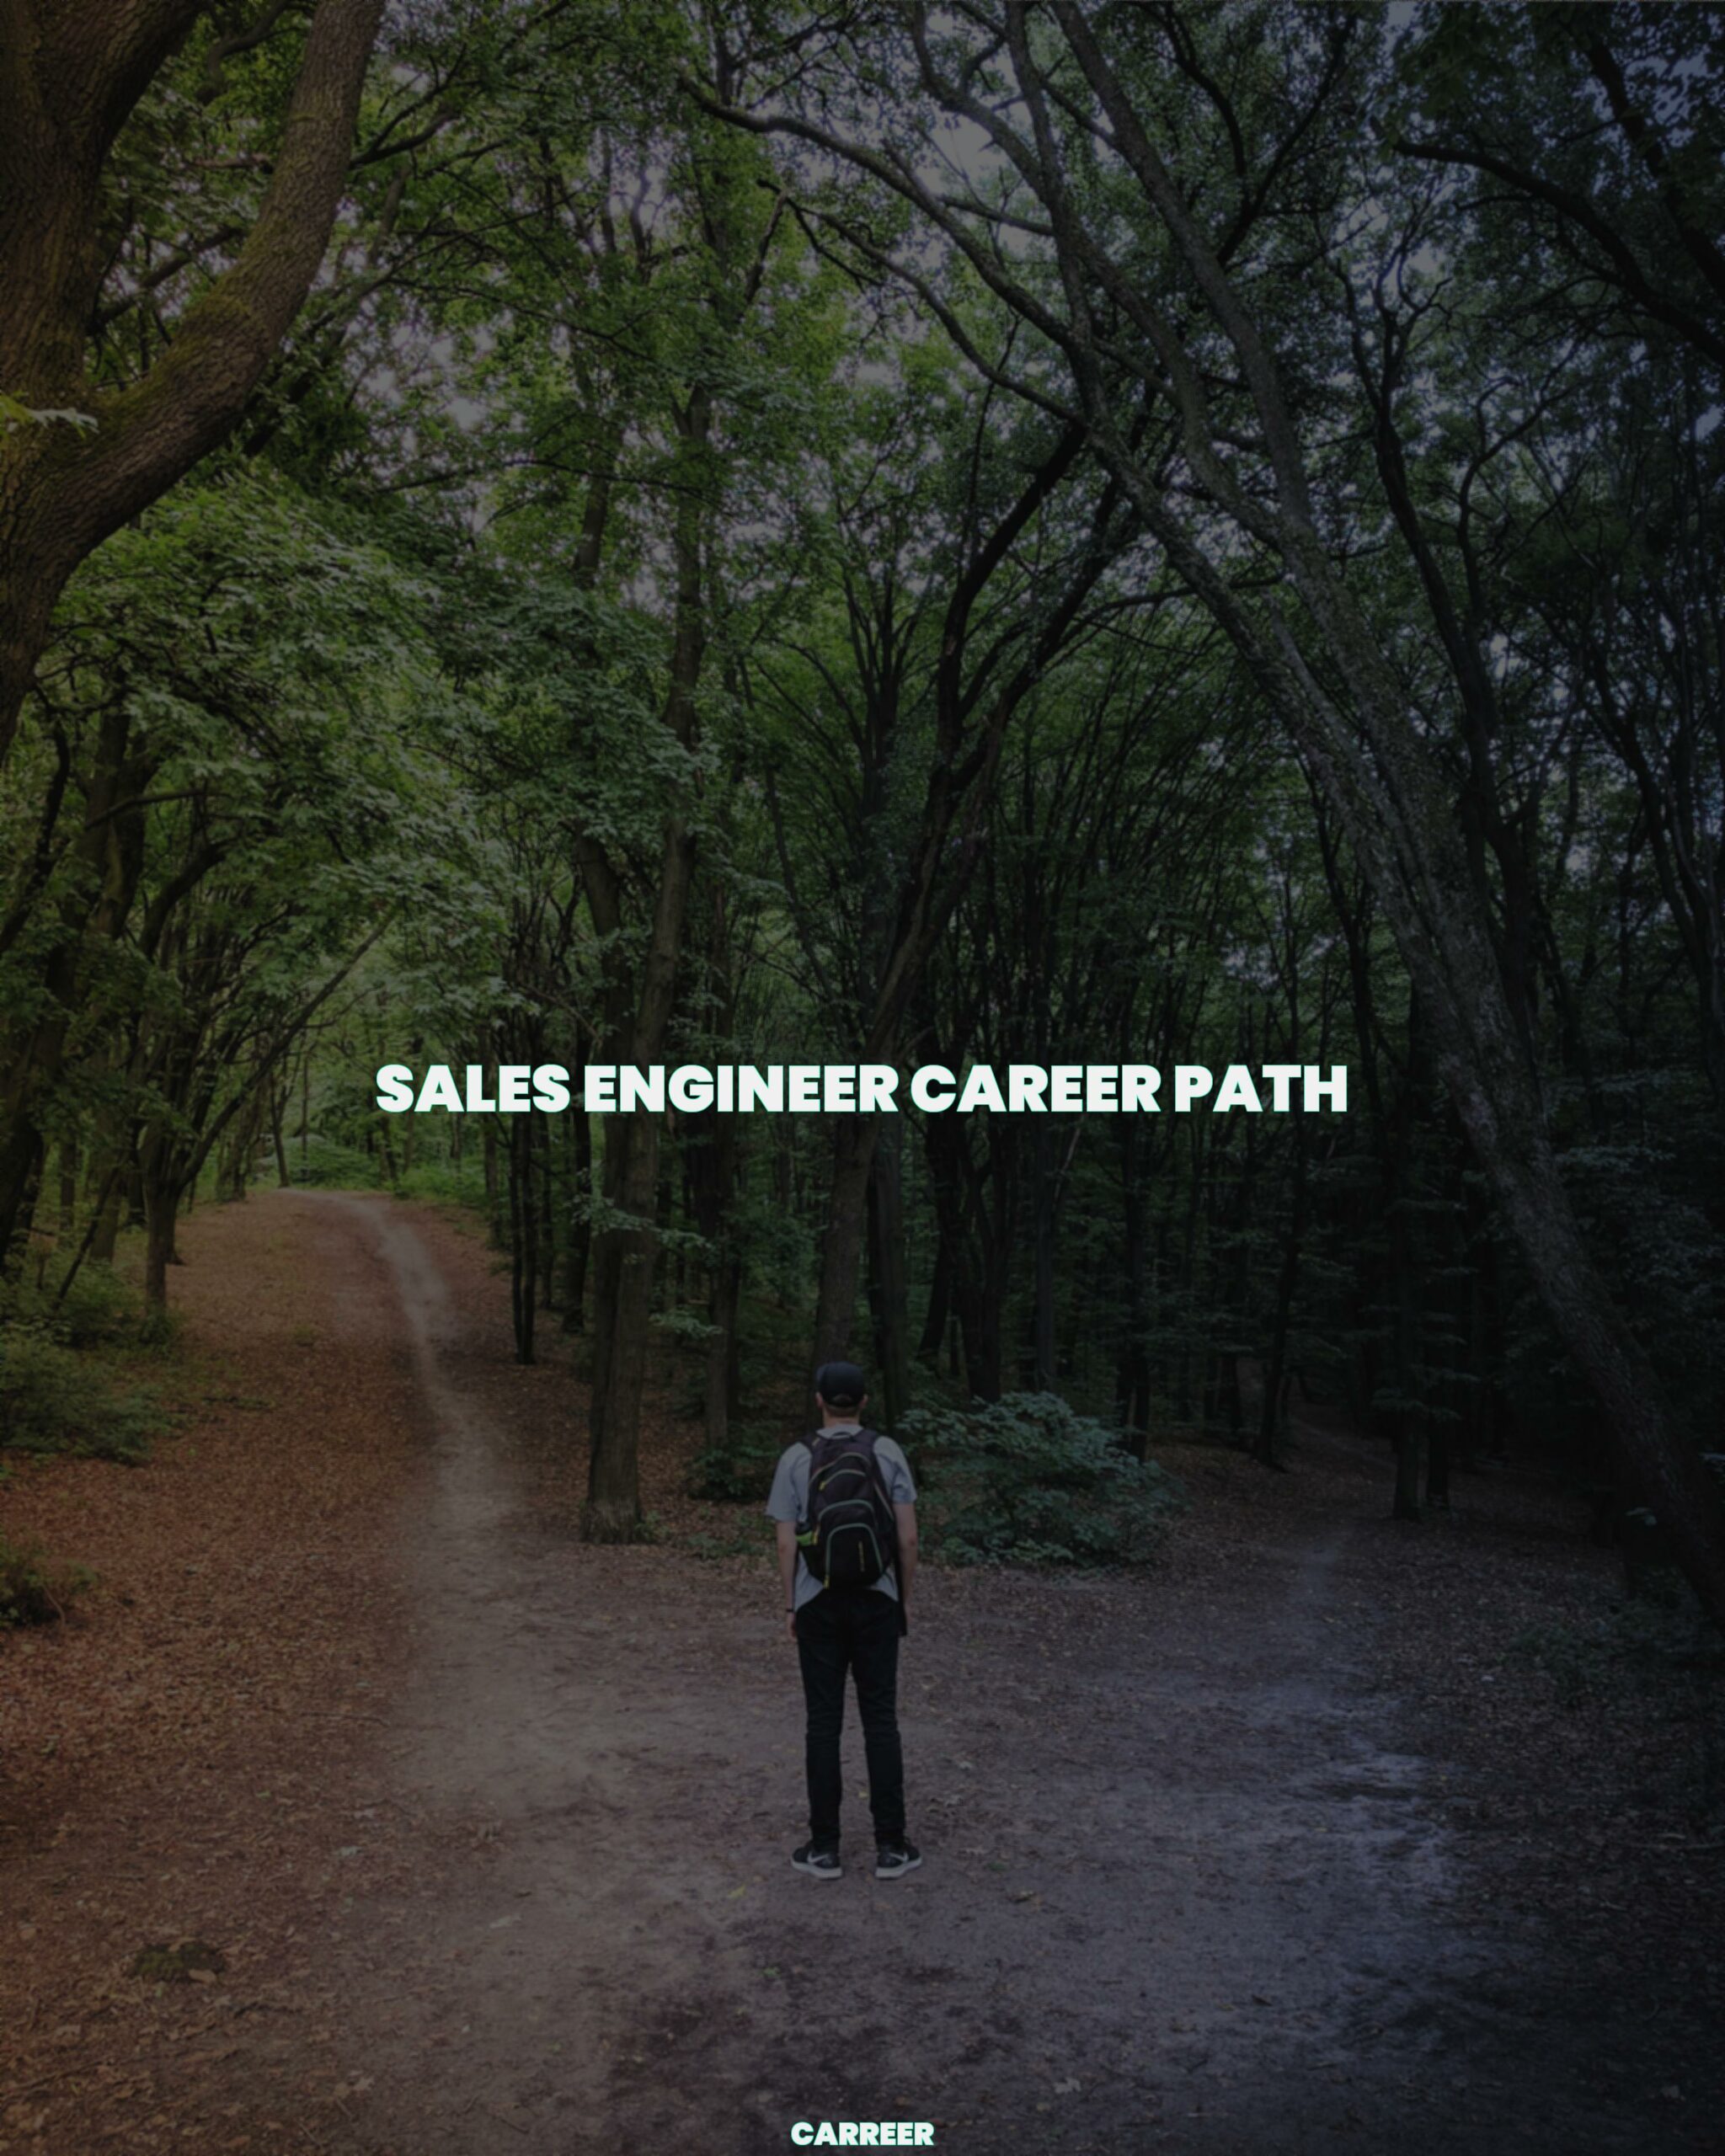 Sales engineer career path